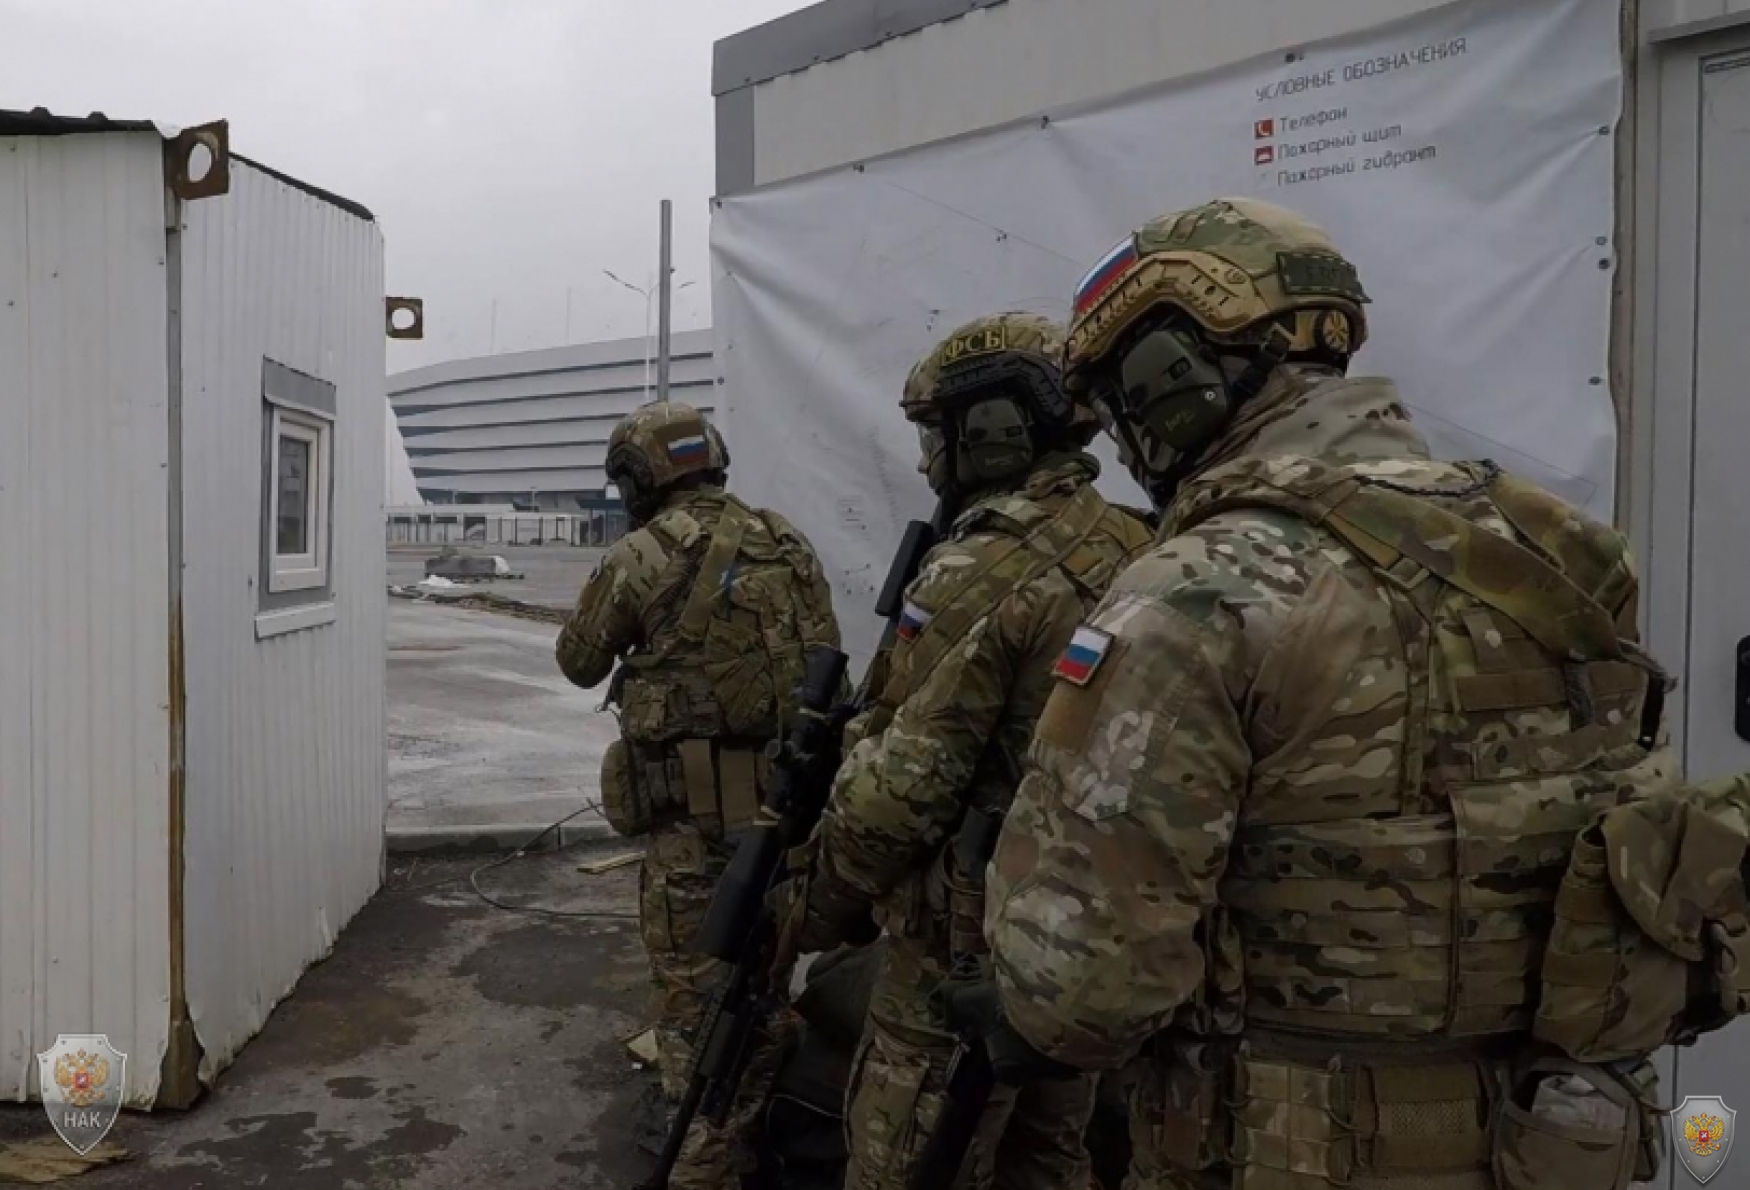 Оперативным штабом в Калининградской области проведено тактико-специальное учение по пресечению террористического акта на объектах с массовым пребыванием людей